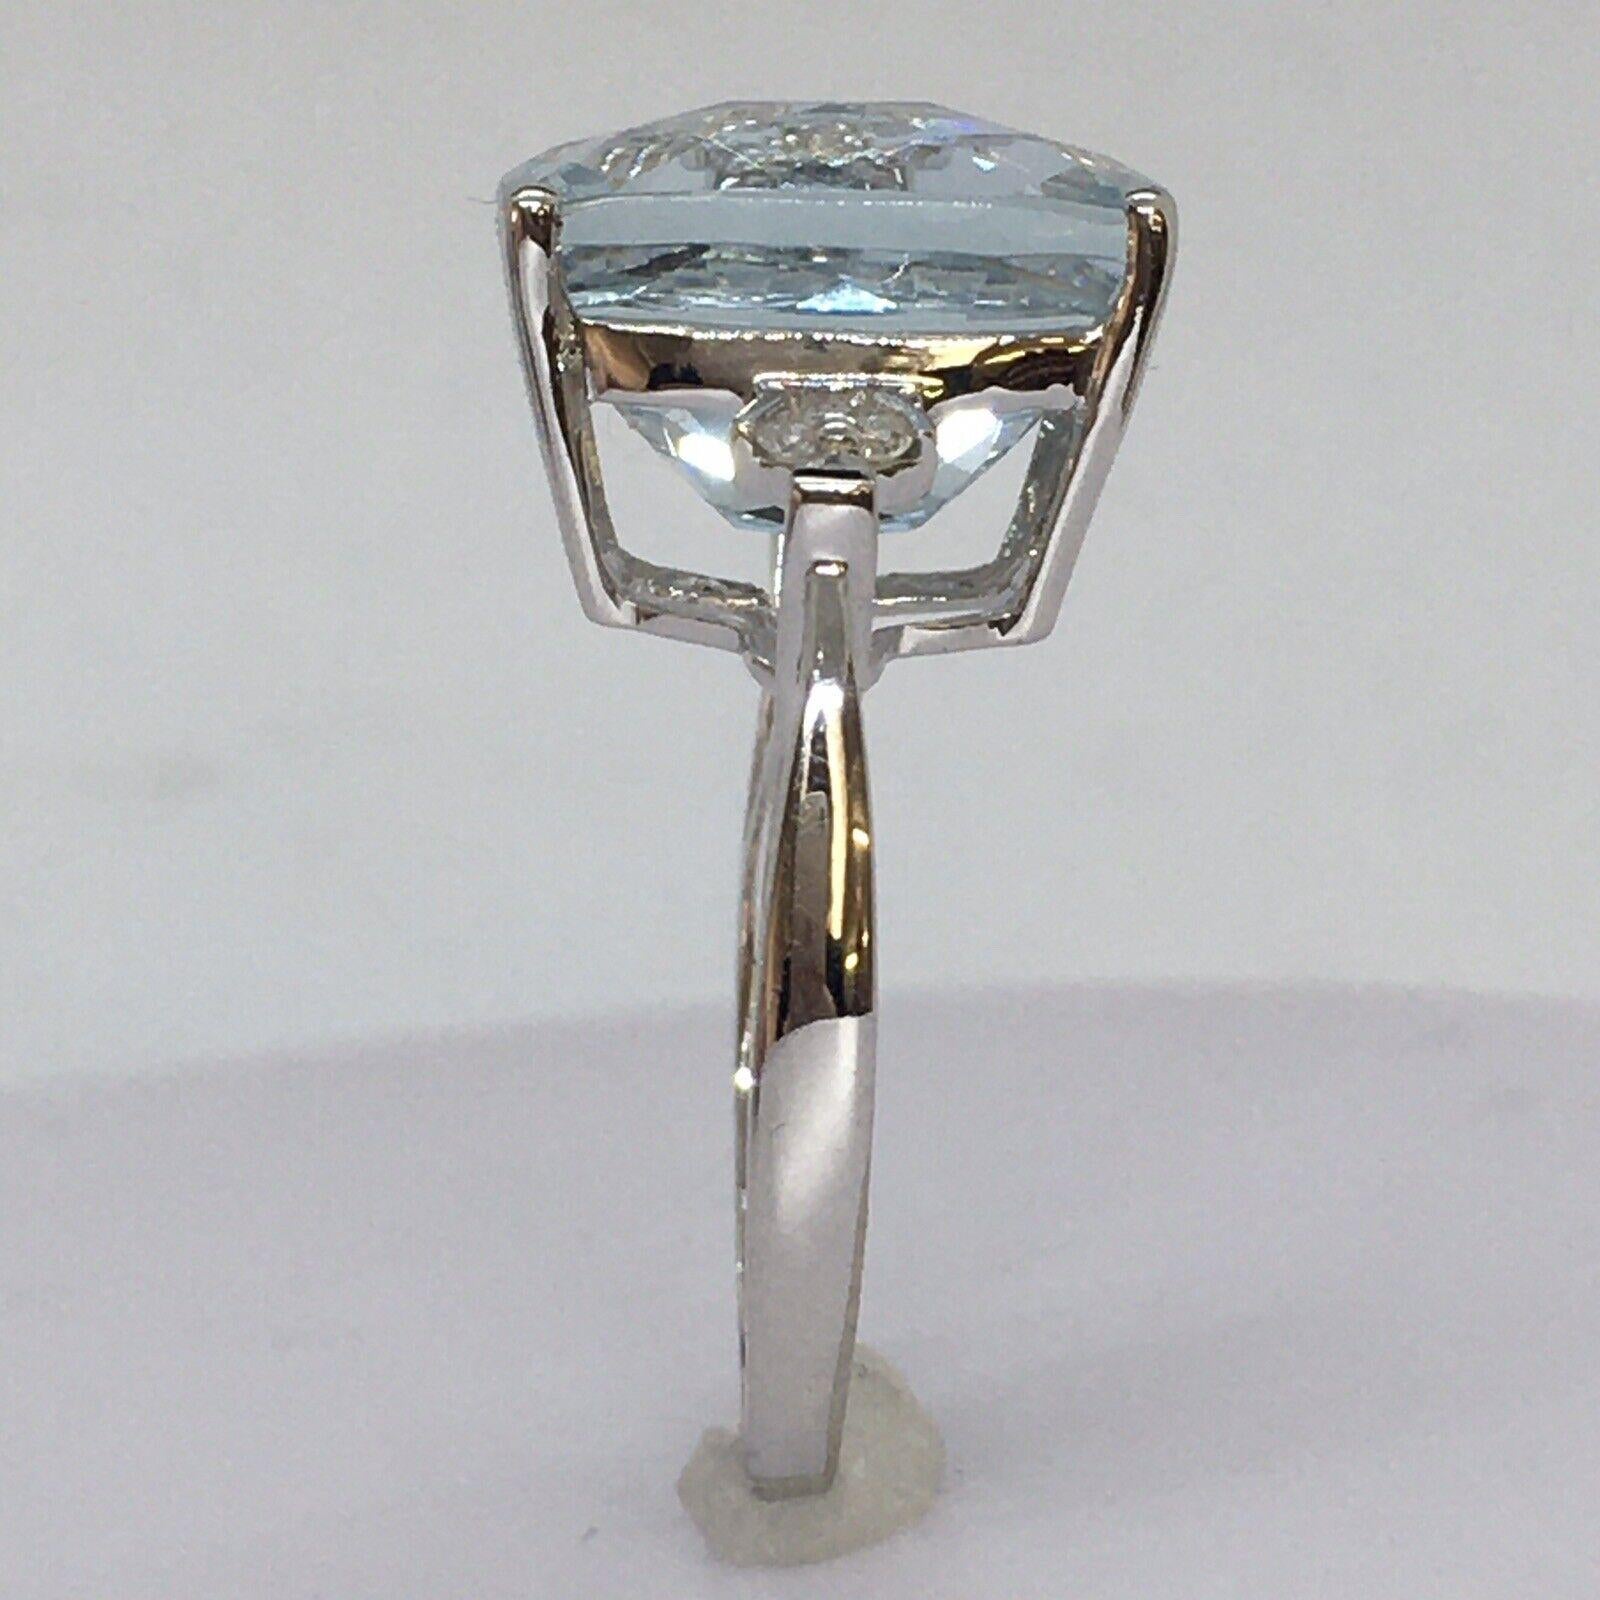 
Bague en or blanc 14k 8.5 Carat Natural Aquamarine Diamond Statement Ring Size 8.5


Taille 8.5
 L'aigue-marine rectangulaire Checker Cut Cushion mesure 13,8 mm par 11,9 mm par 9,1 mm, soit 8,80 carats selon les mesures. 
6 diamants, 0,01 carat